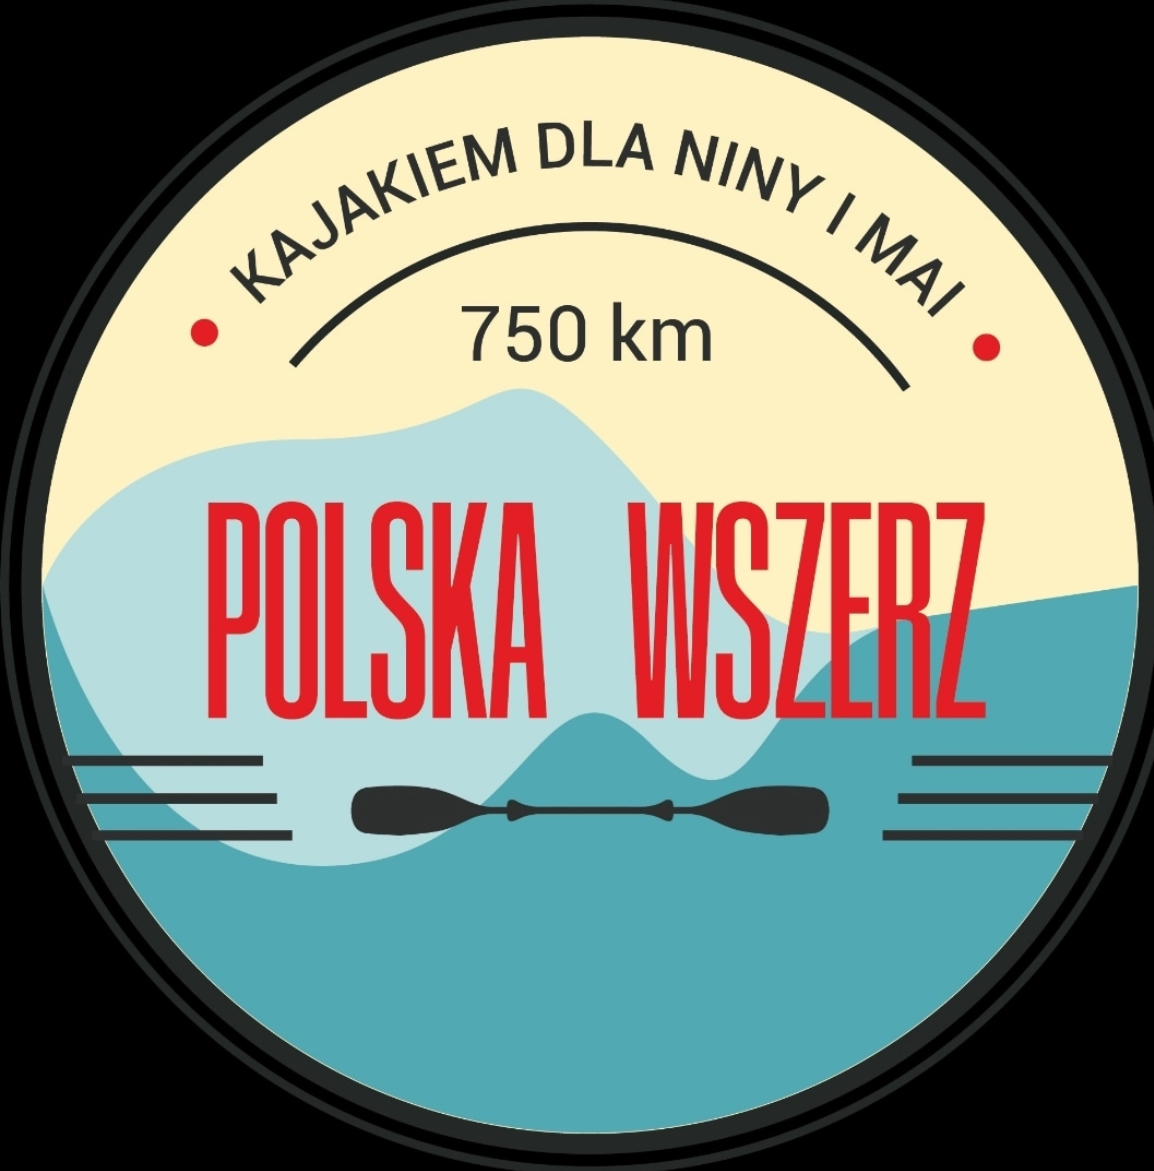 Kajakiem dla Niny i Mai. 750 km. Polska Wszerz.